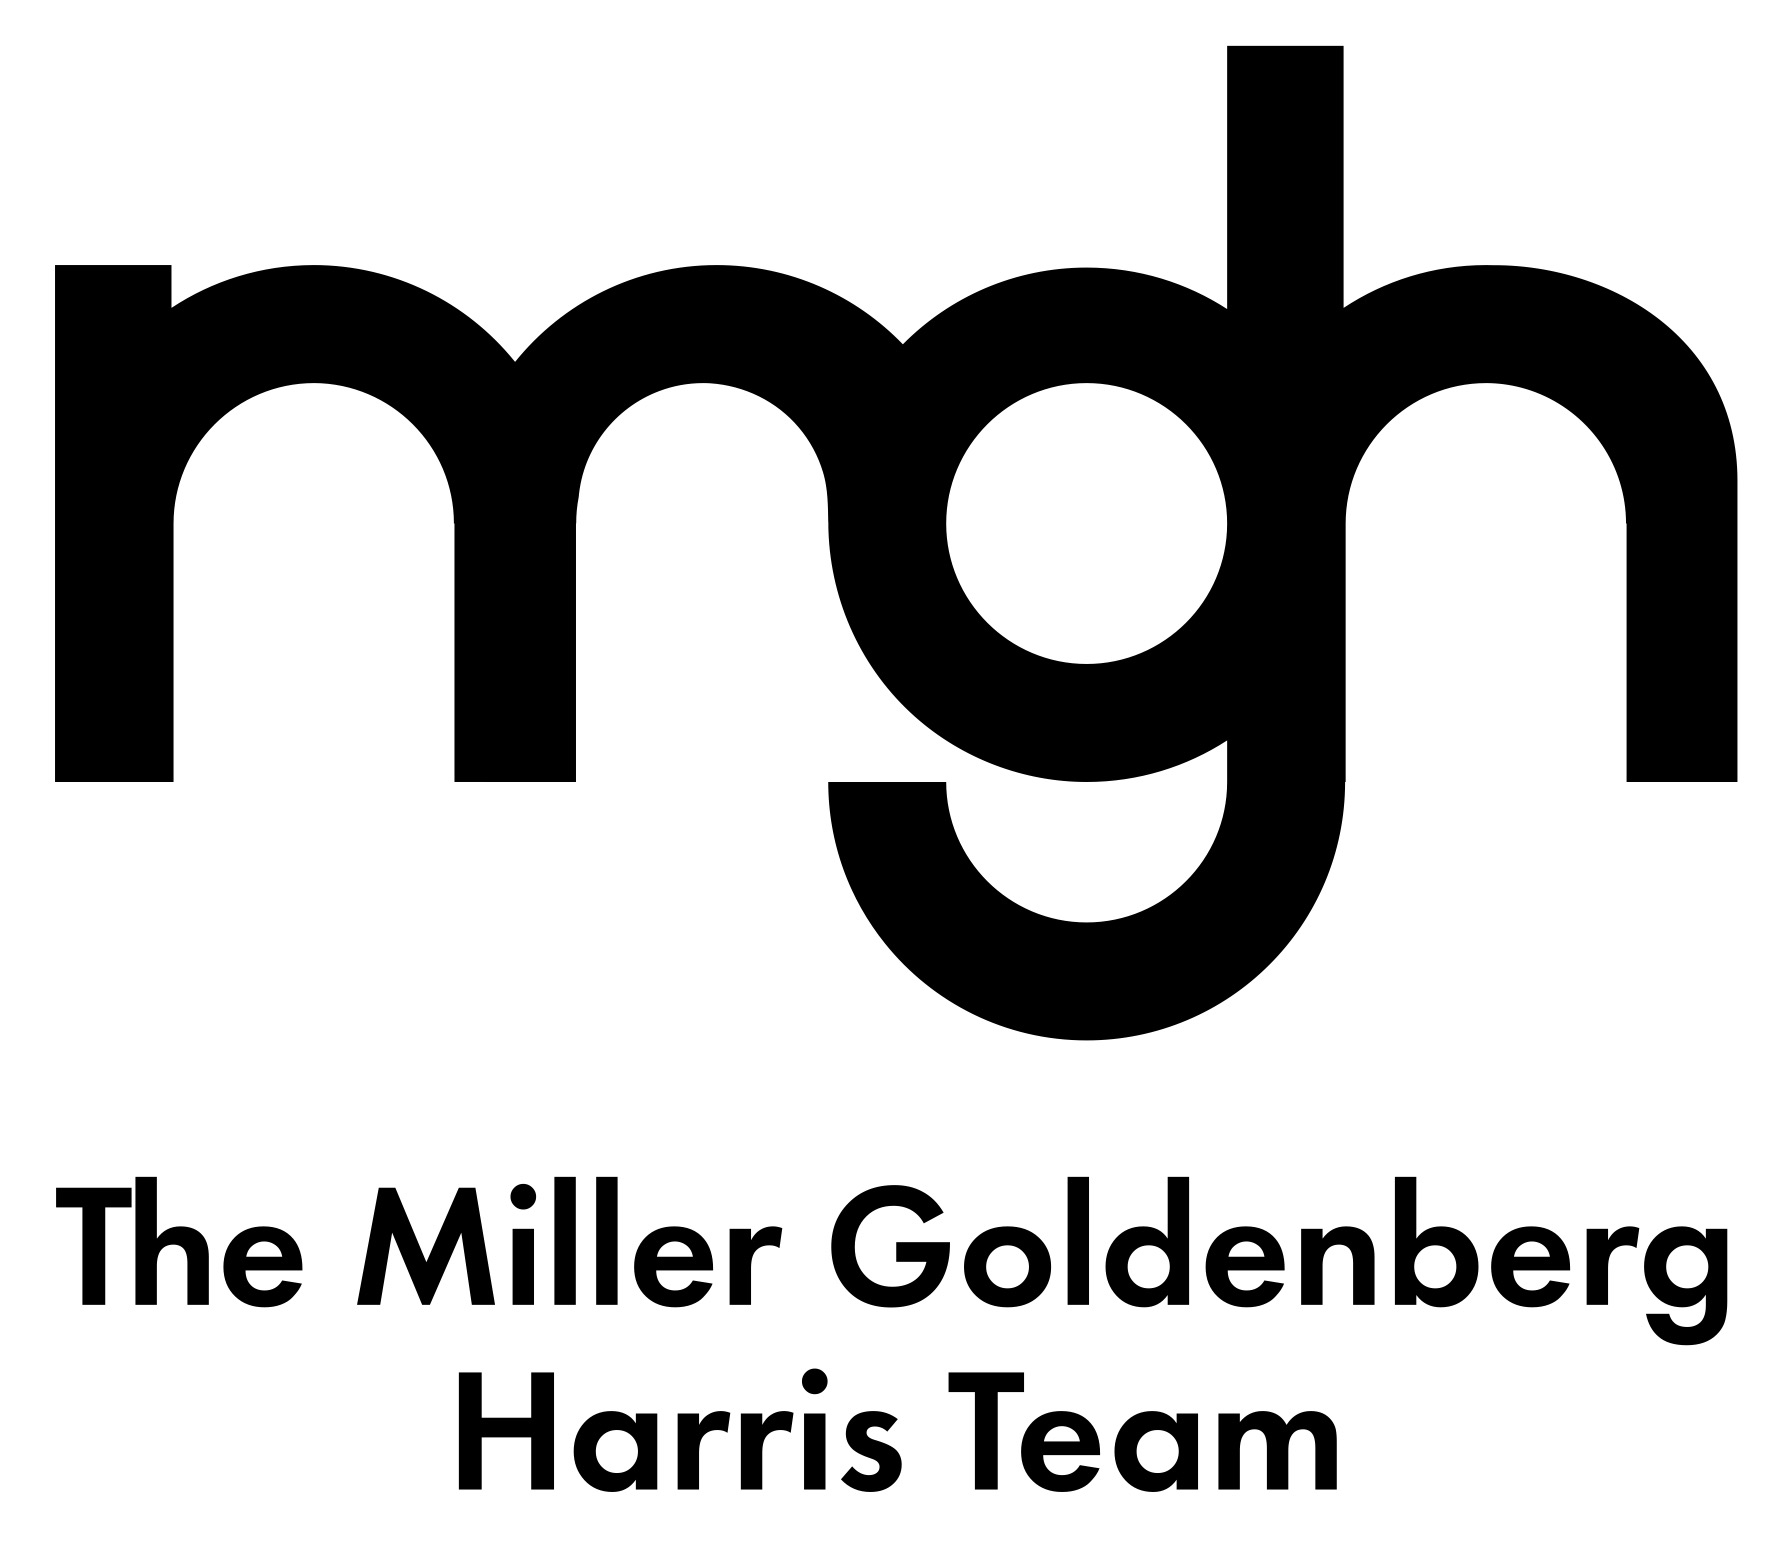 A text banner describing The Miller Goldenberg